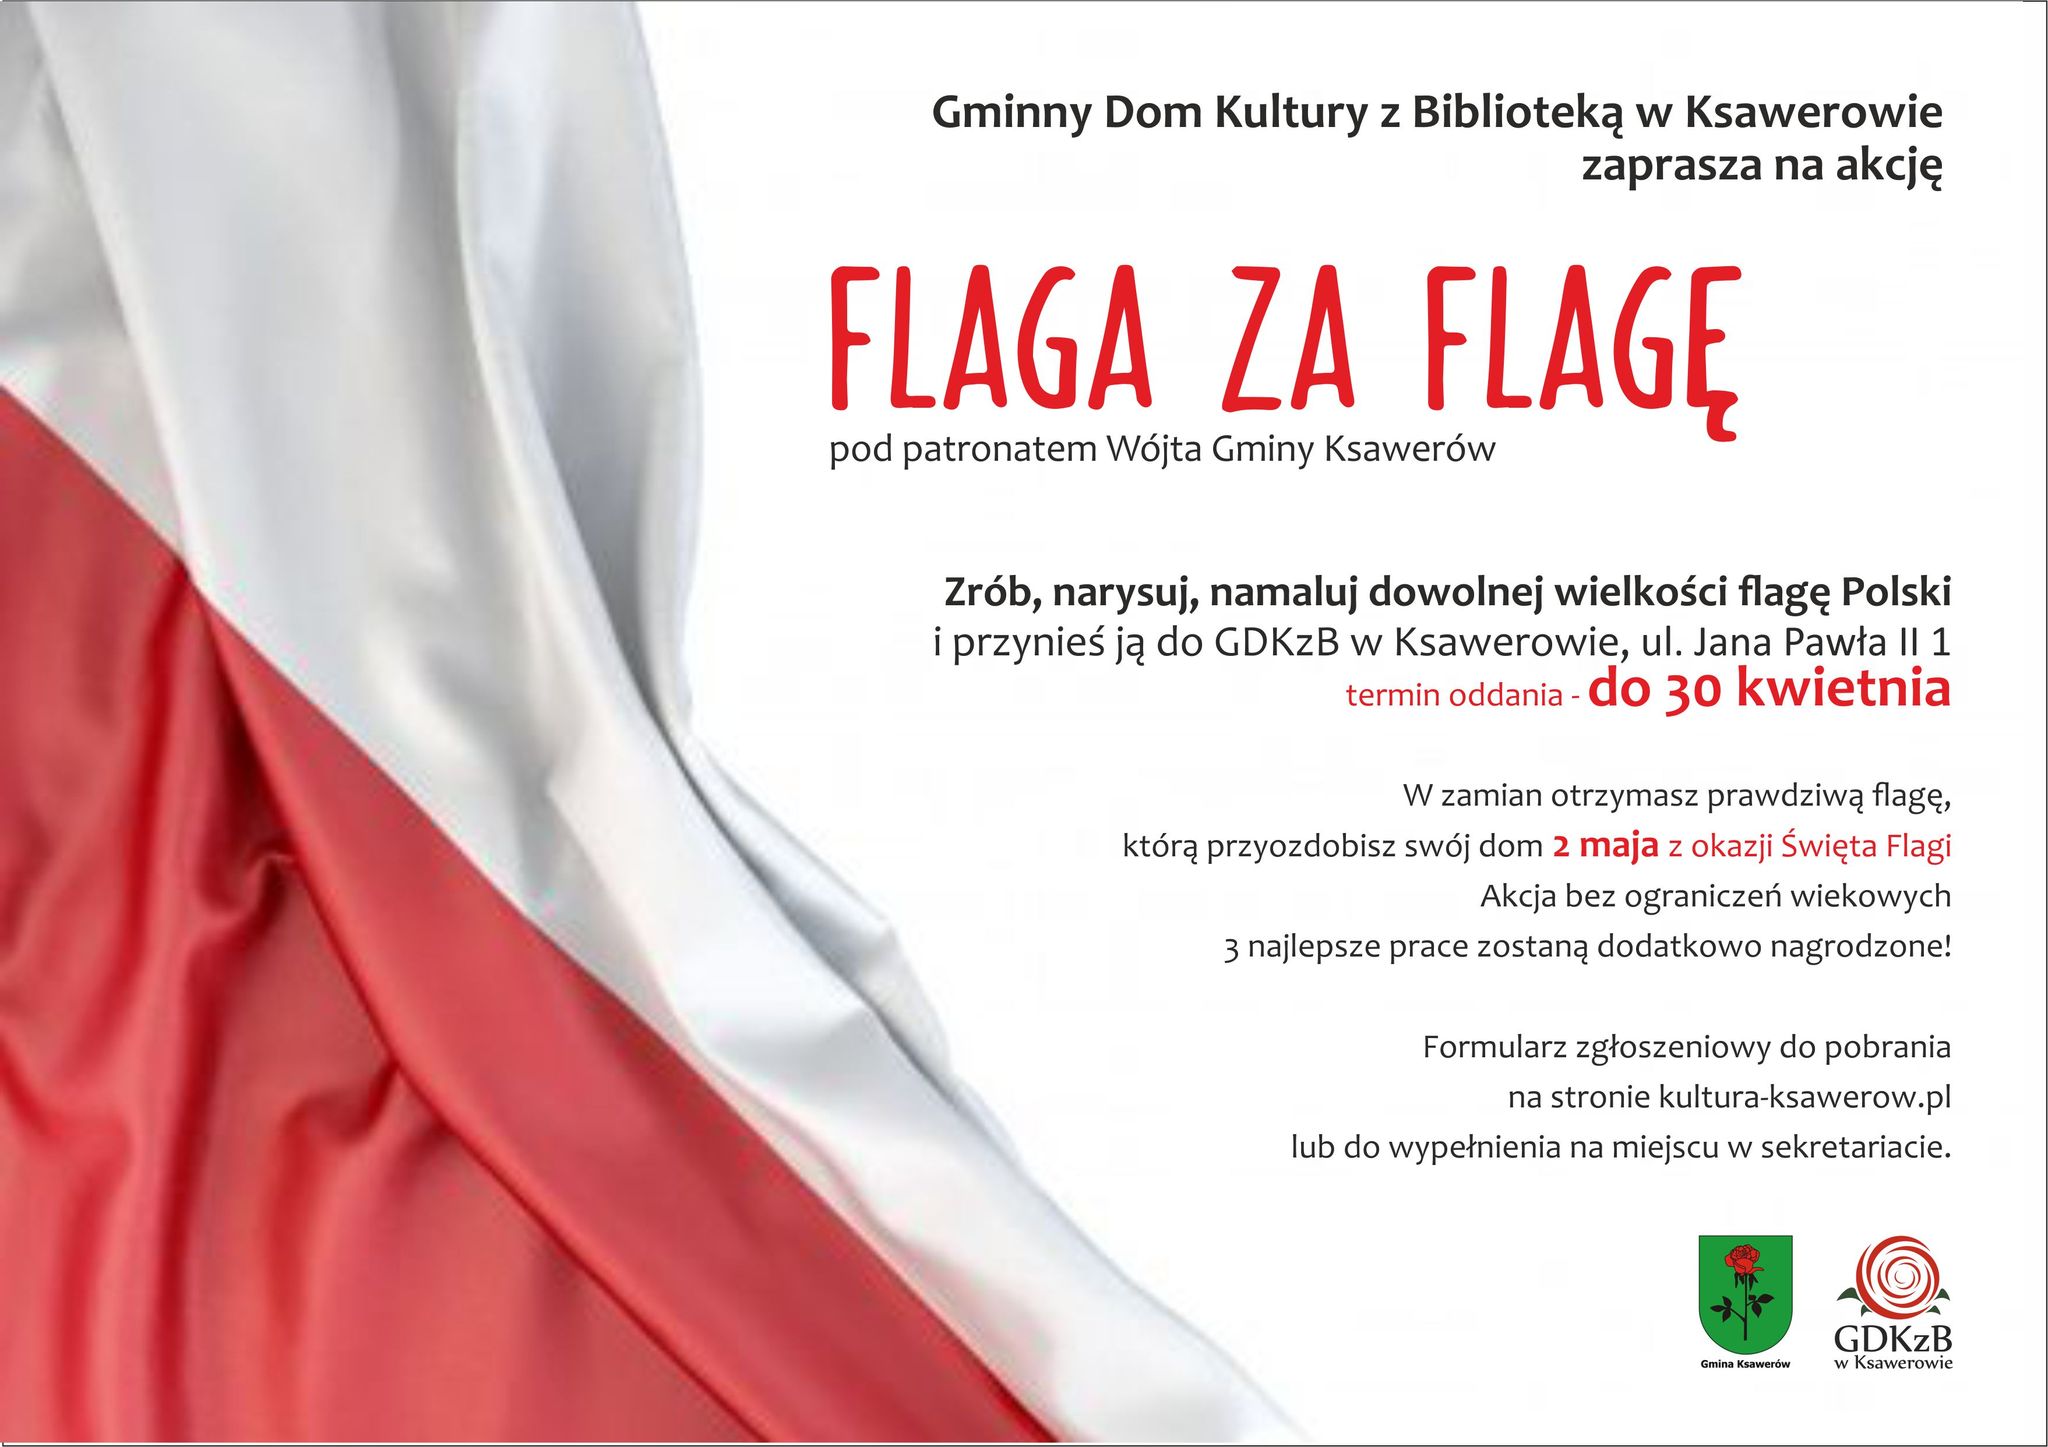 Ogłaszamy konkurs pod patronatem Wójta Gminy Ksawerów.
Zrób, narysuj, namaluj dowolną flagę Polski i przynieś ją do GDKzB w Ksawerowie do 30 kwietnia. 
W zamian otrzymasz prawdziwą flagę, którą przyozdobisz swój dom 2 maja z okazji Święta Flagi.